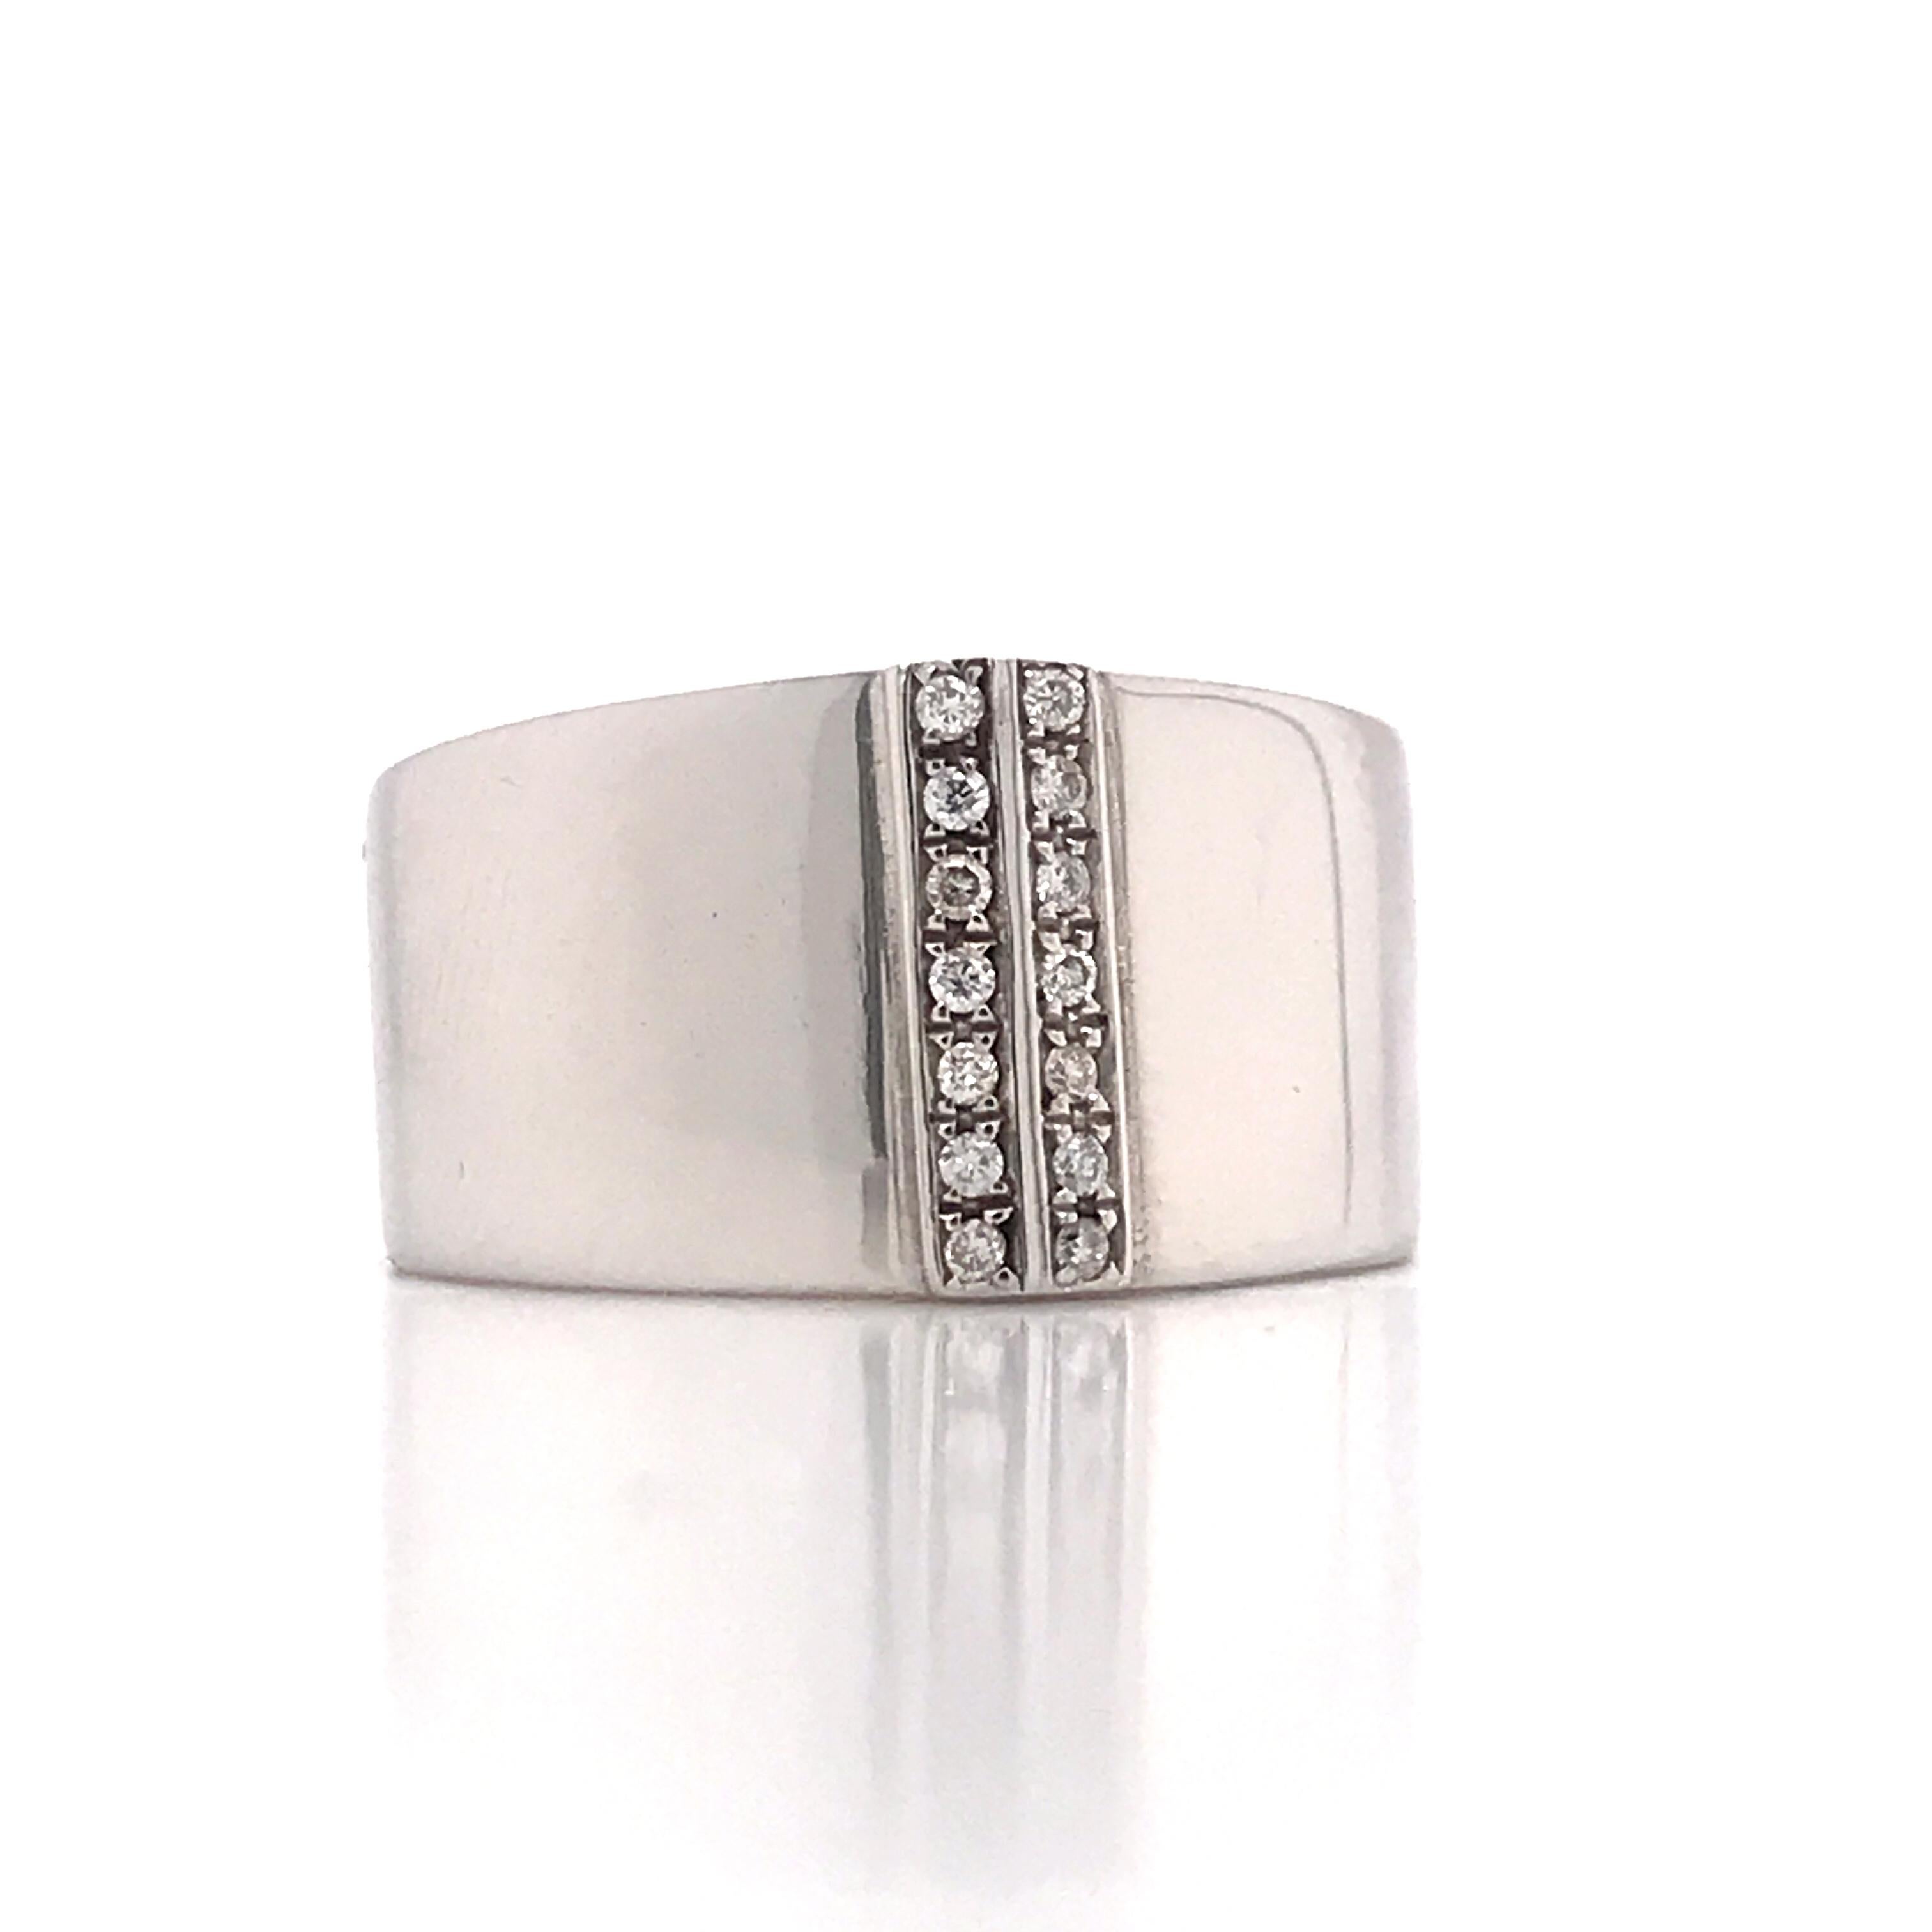 Sublimieren Sie Ihren Stil mit diesem Ring aus 18 Karat Weißgold und Diamanten, einem außergewöhnlichen Stück, das die zeitlose Eleganz von Weißgold mit dem funkelnden Glanz von Diamanten verbindet. Dieser Ring verkörpert die perfekte Verbindung von